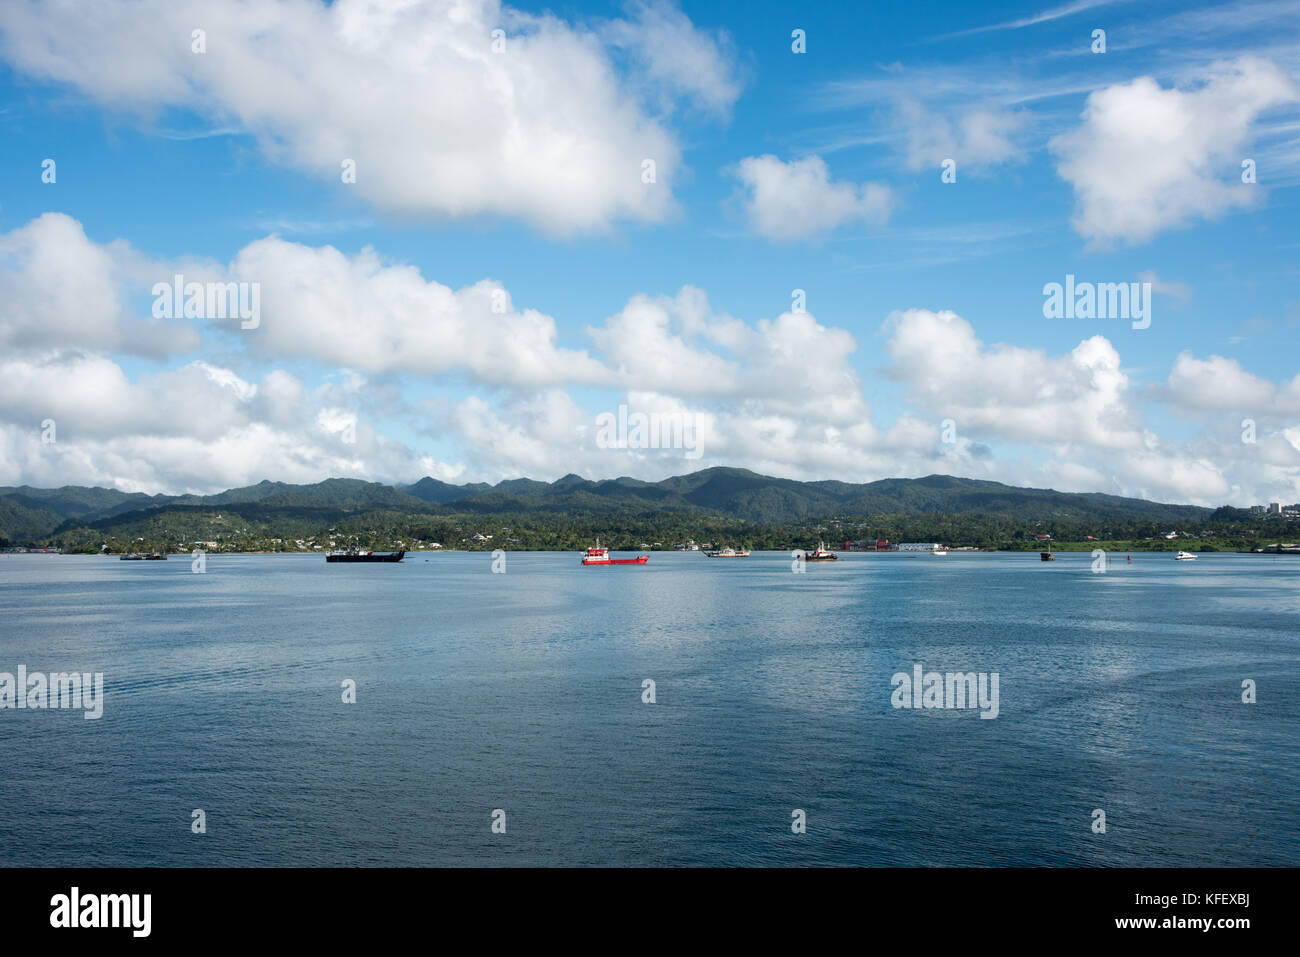 La Suva,viti levu,Figi-novembre 28,2016: varietà di imbarcazioni nautiche nell'oceano pacifico con la foresta pluviale tropicale paesaggio a Suva, Viti Levu, isole Figi Foto Stock